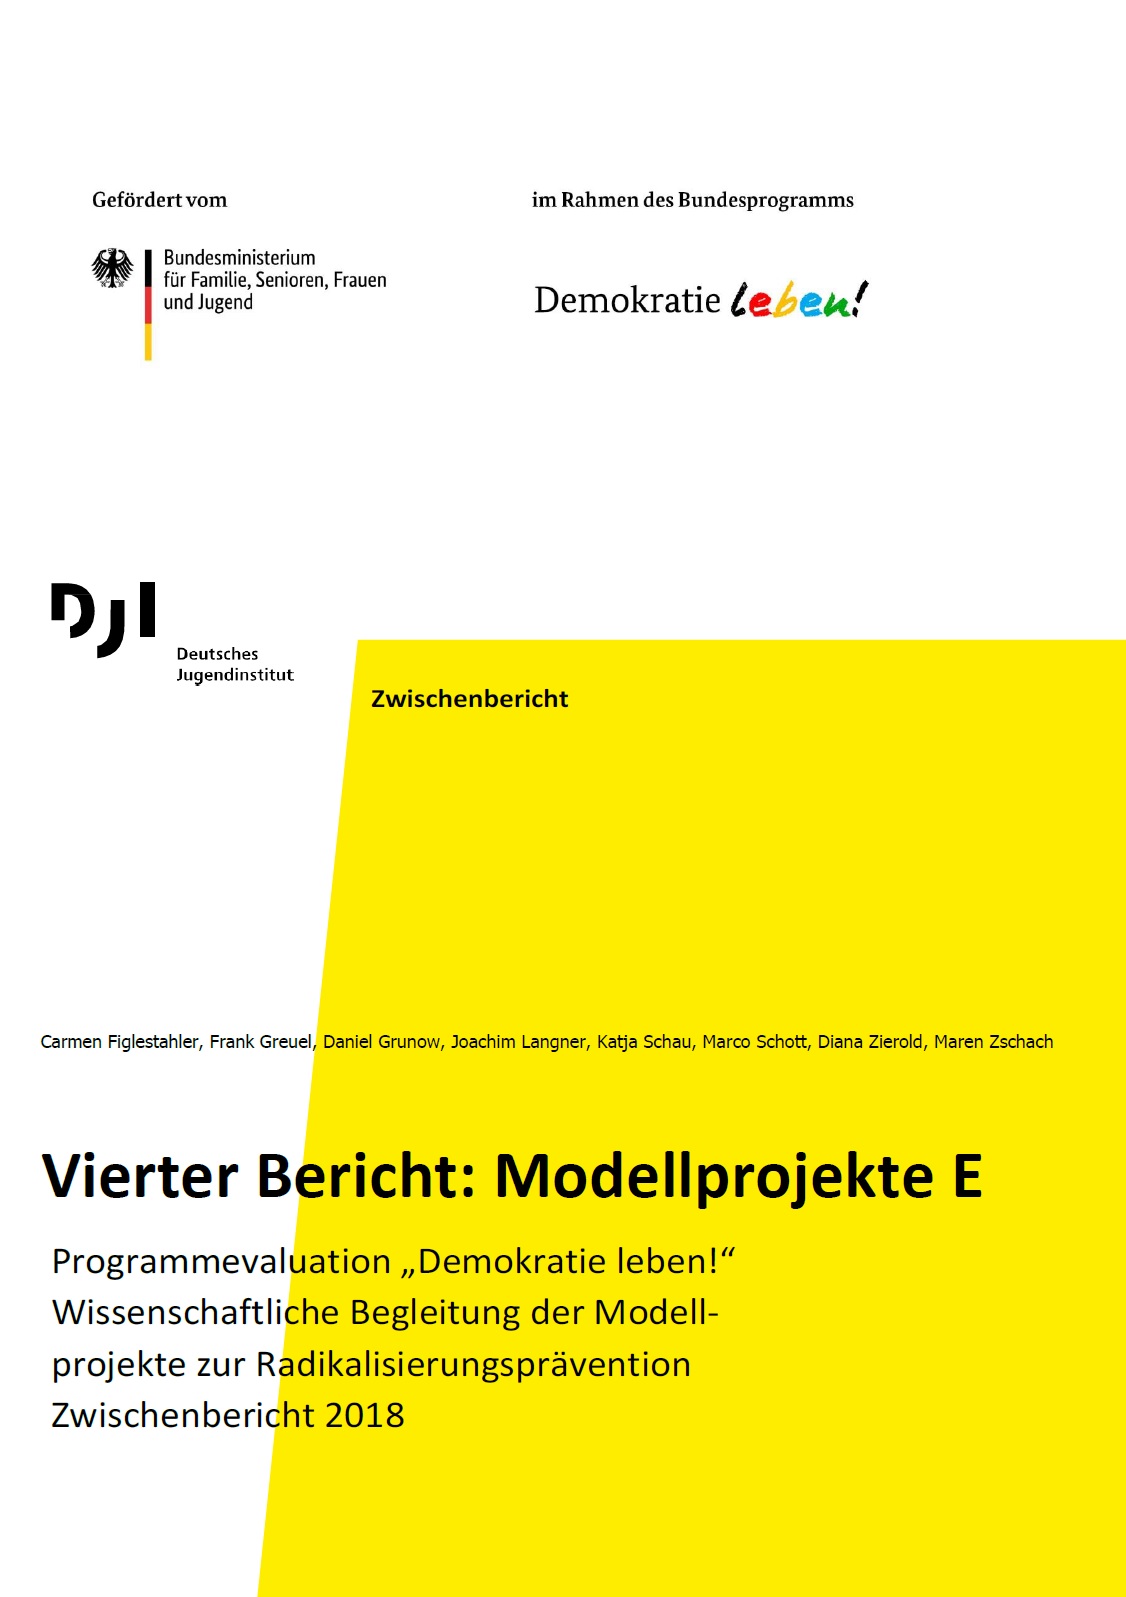 Auf dem Bild steht Vierter Bericht: Modellprojekte E Programmevaluation „Demokratie leben!“ Wissenschaftliche Begleitung der Modellprojekte zur Radikalisierungsprävention Zwischenbericht 2018